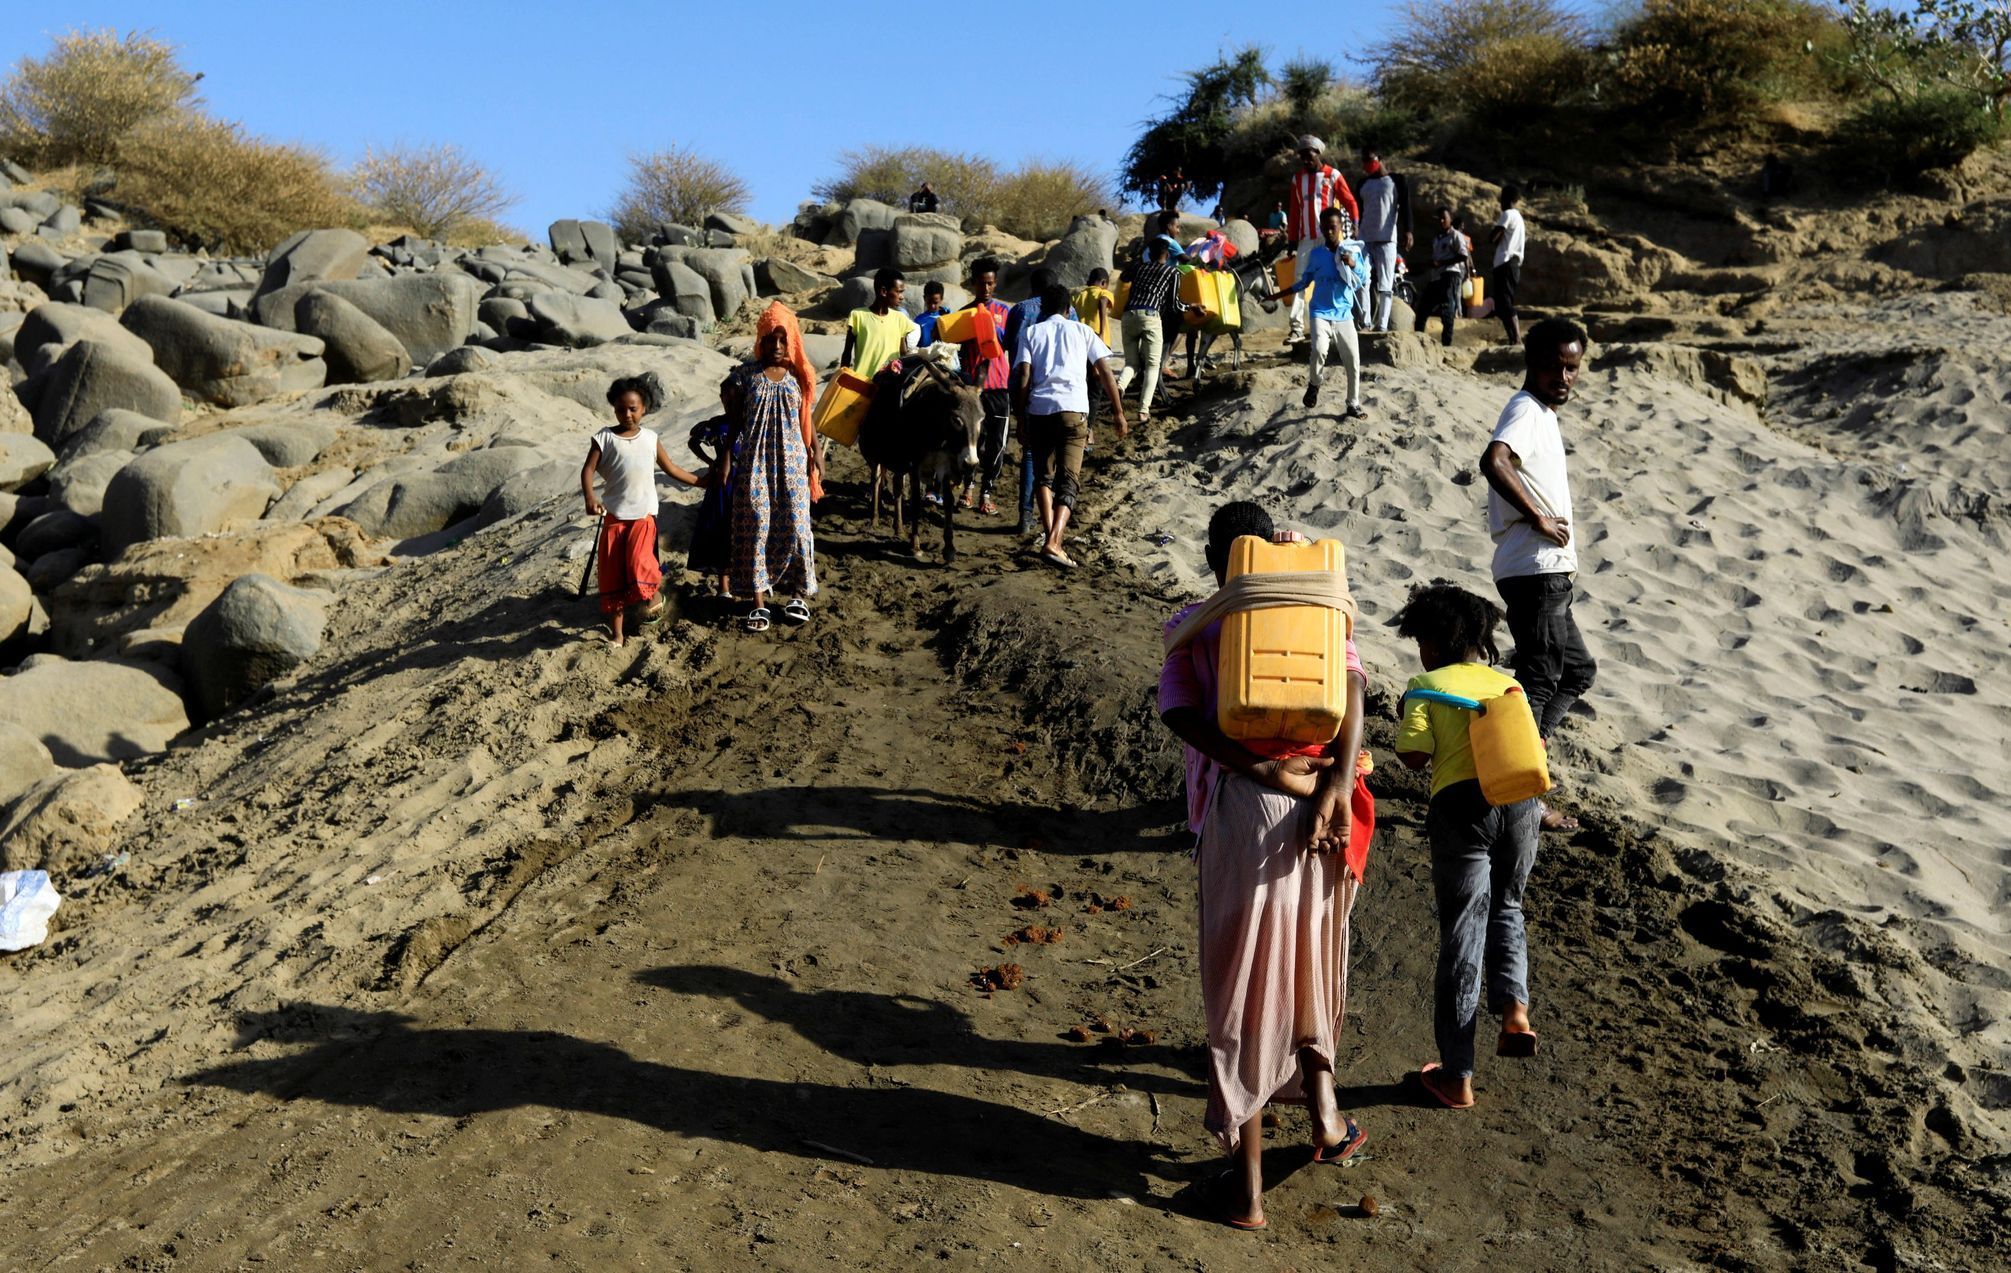 Tigraj etiopie boje uprchlíci súdán